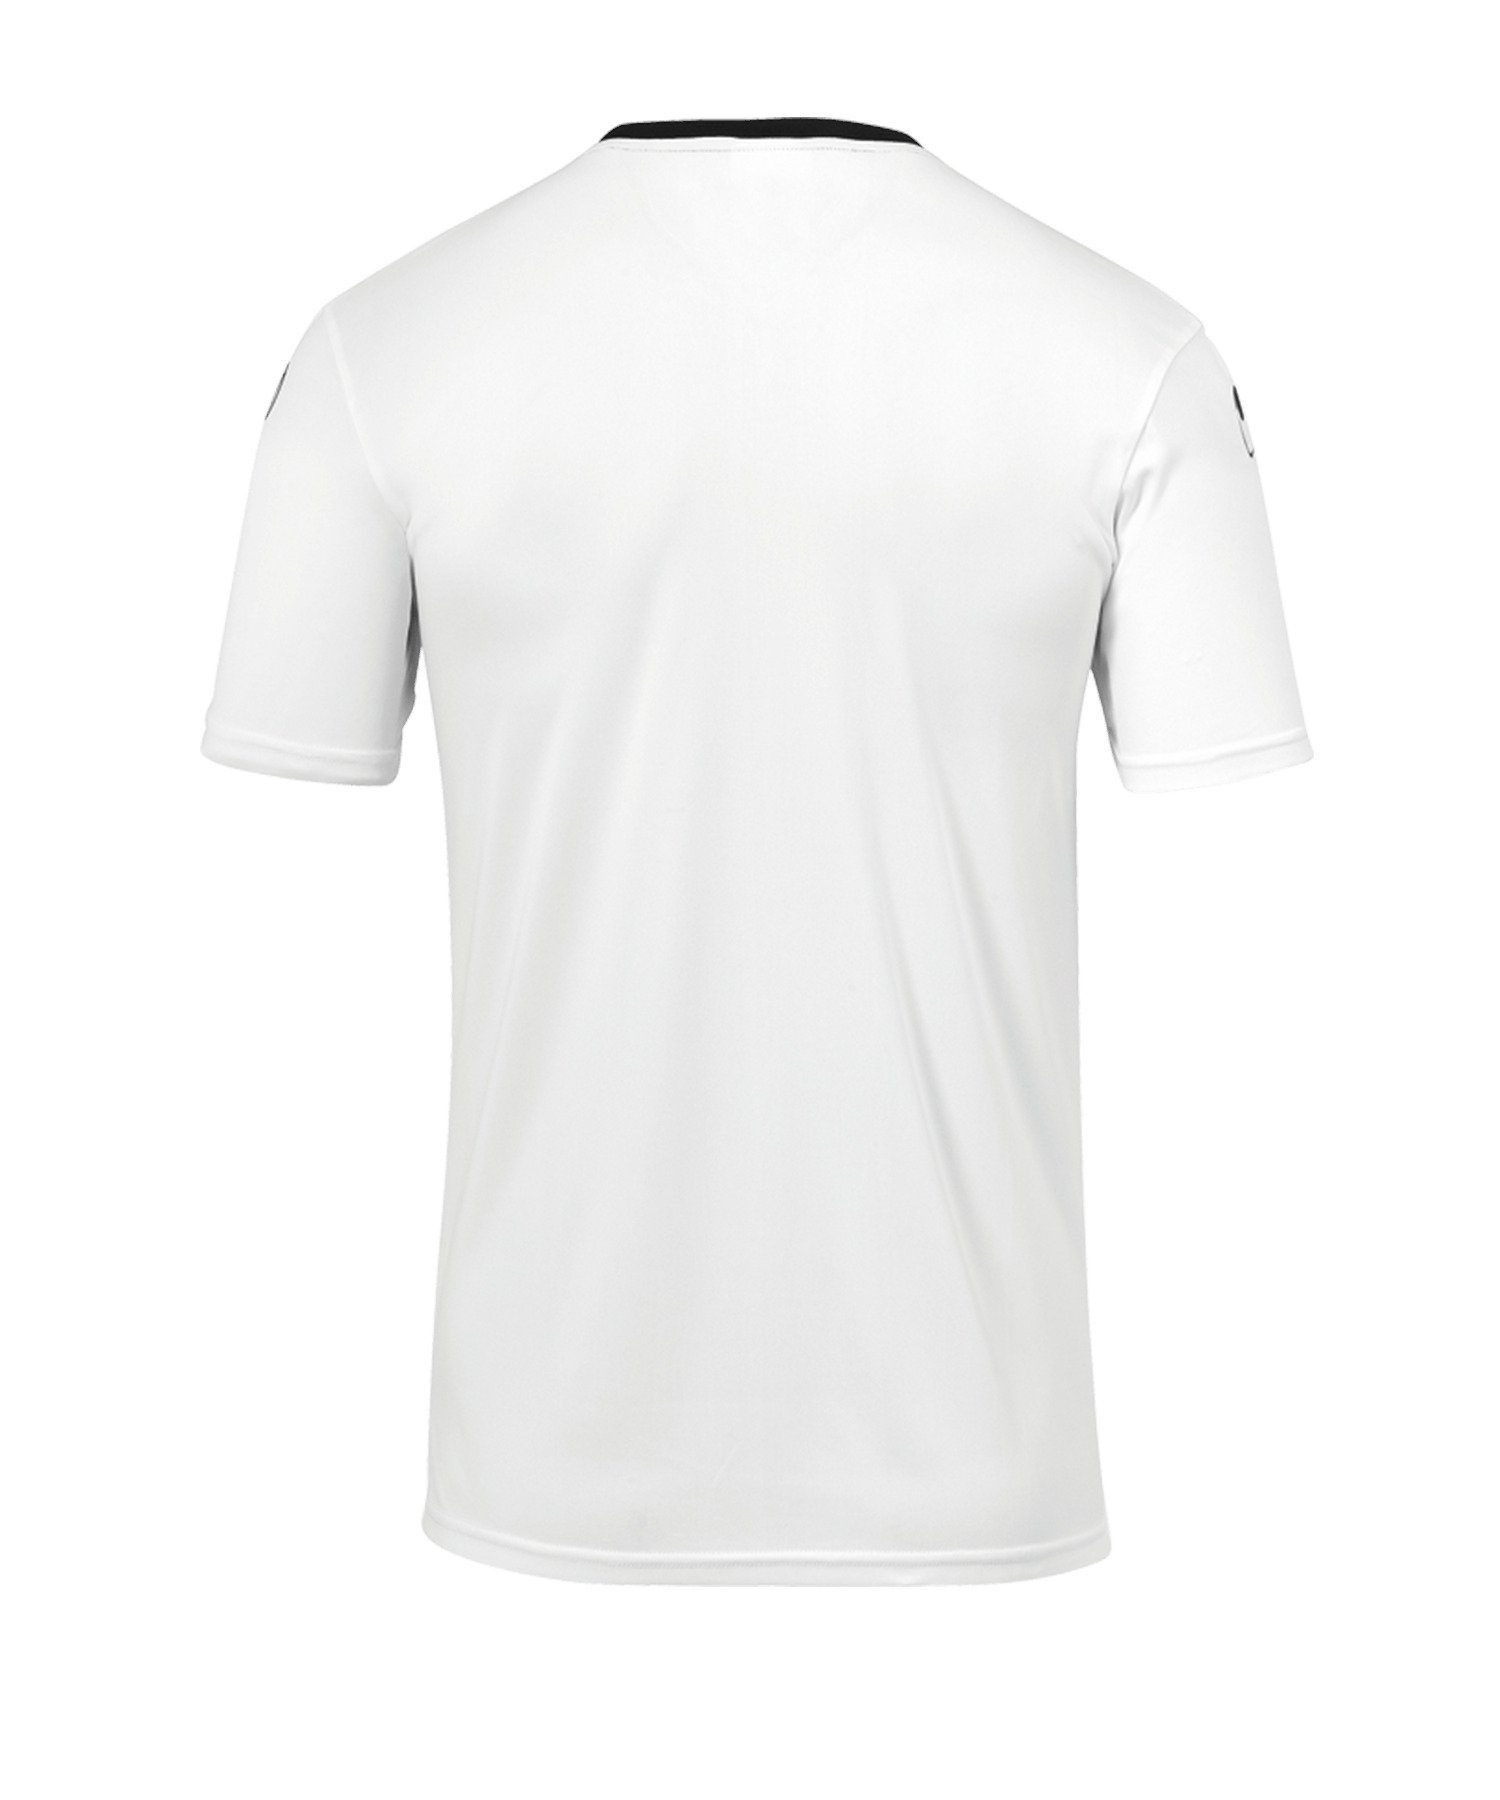 uhlsport T-Shirt weissschwarz 23 Offense Trainingsshirt default